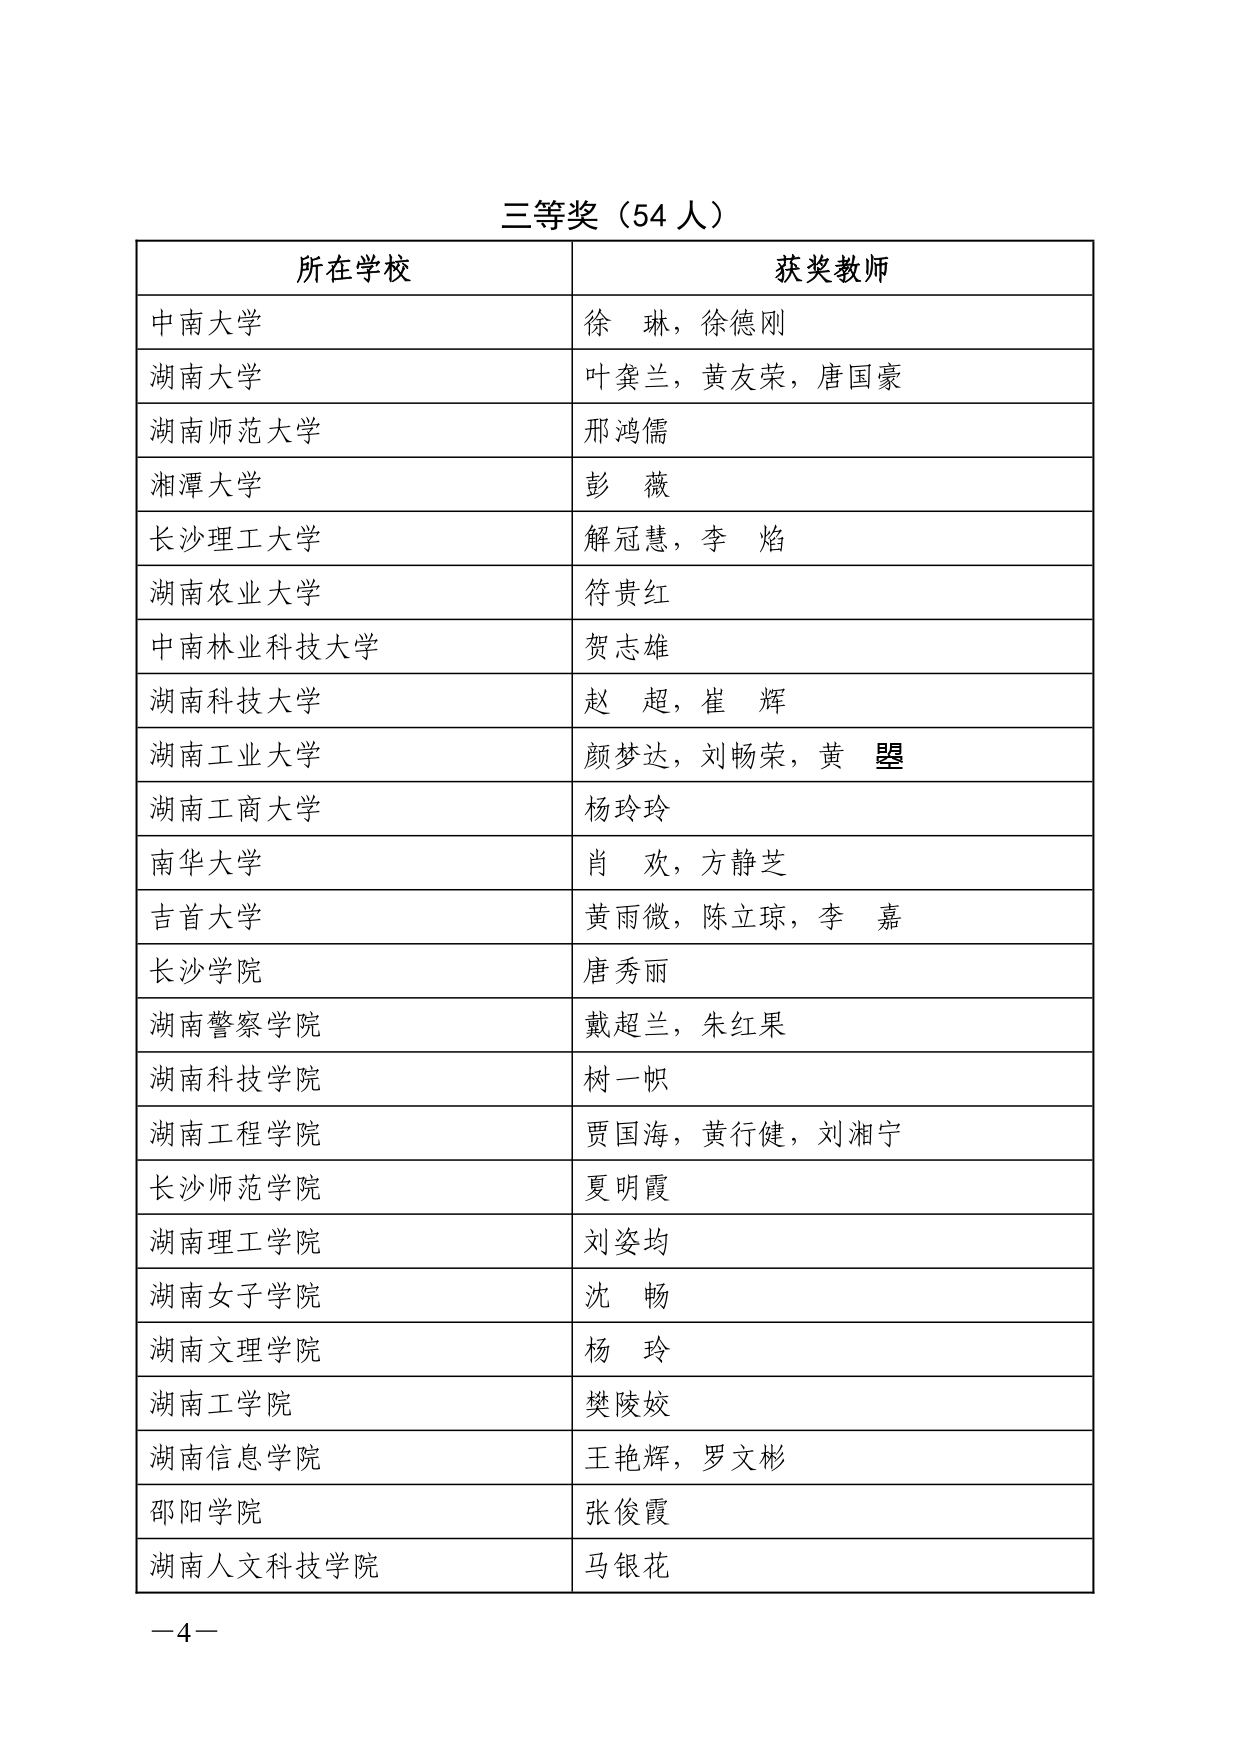 关于公布 2022 年湖南省普通高校教师信息化教学竞赛获奖结果的通知(湘教通〔2022〕353号)_page-0004.jpg